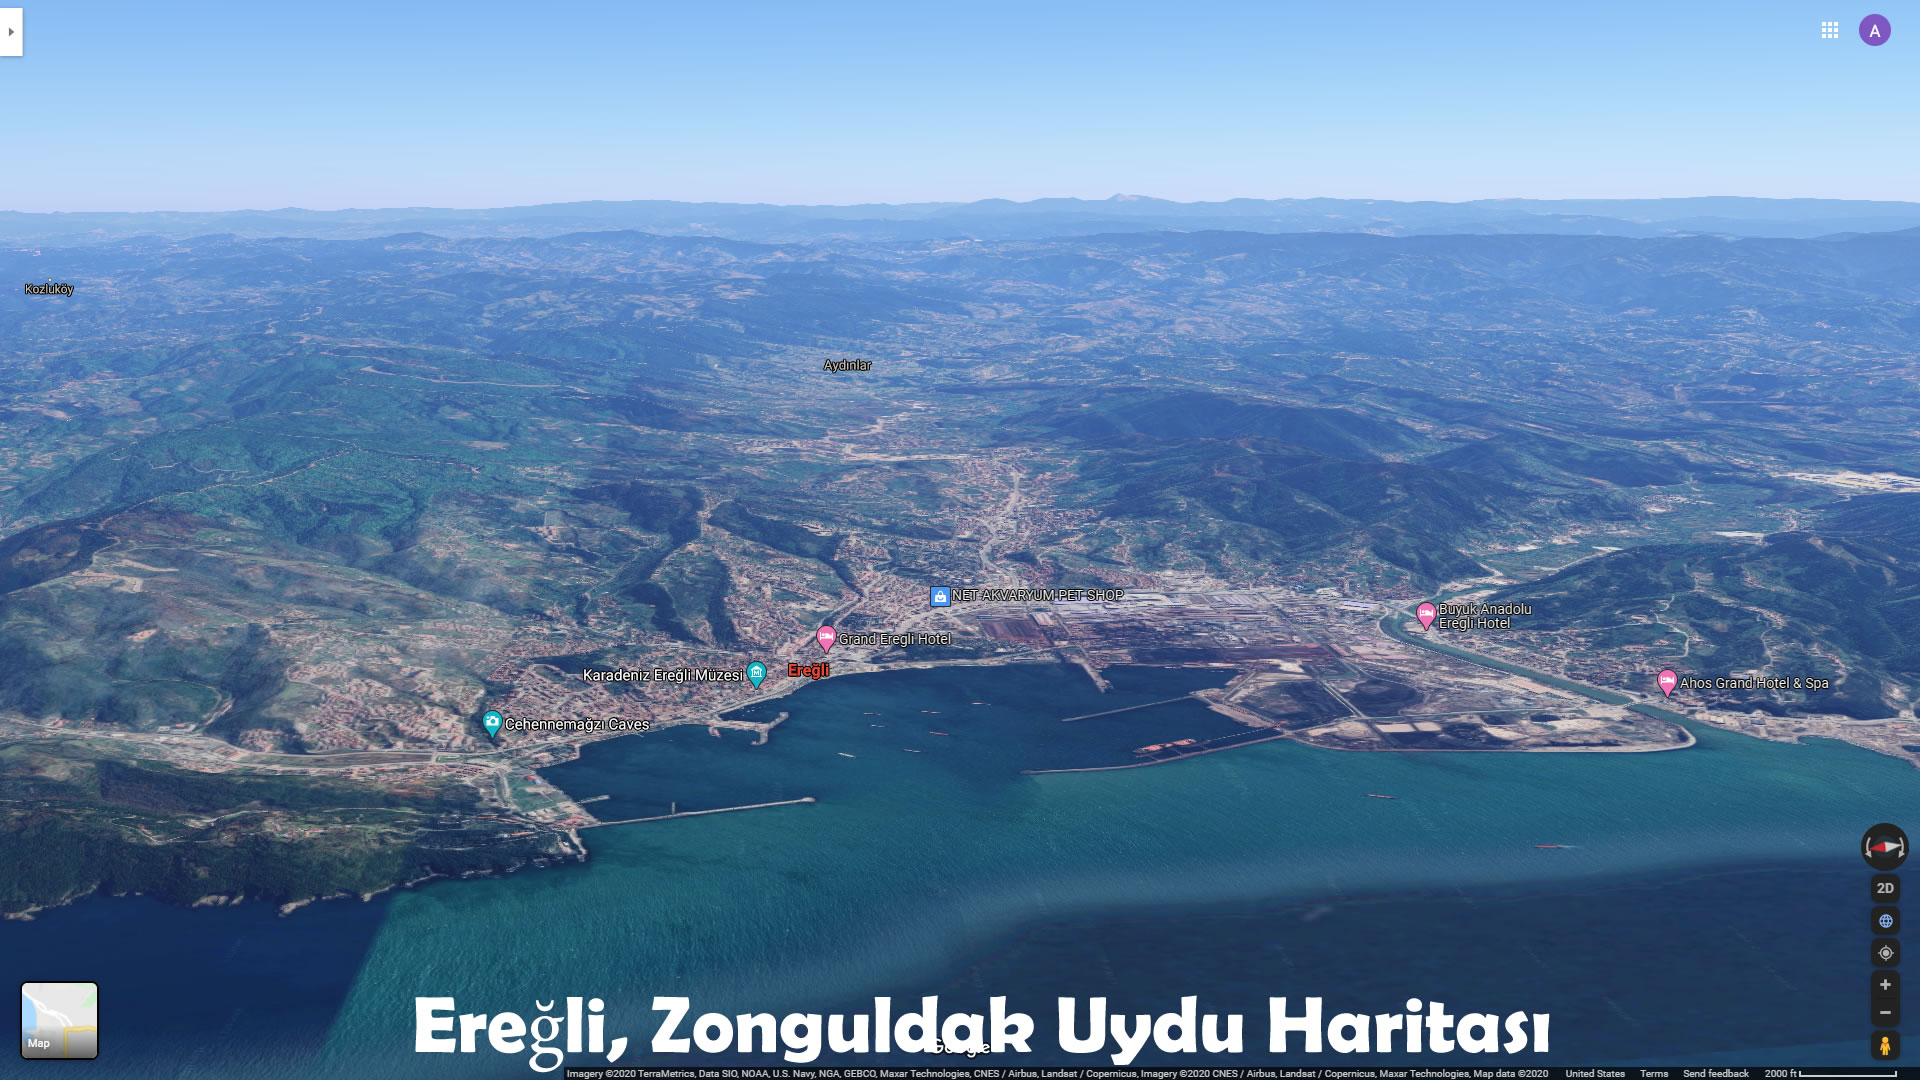 Ereğli, Zonguldak Uydu Haritası